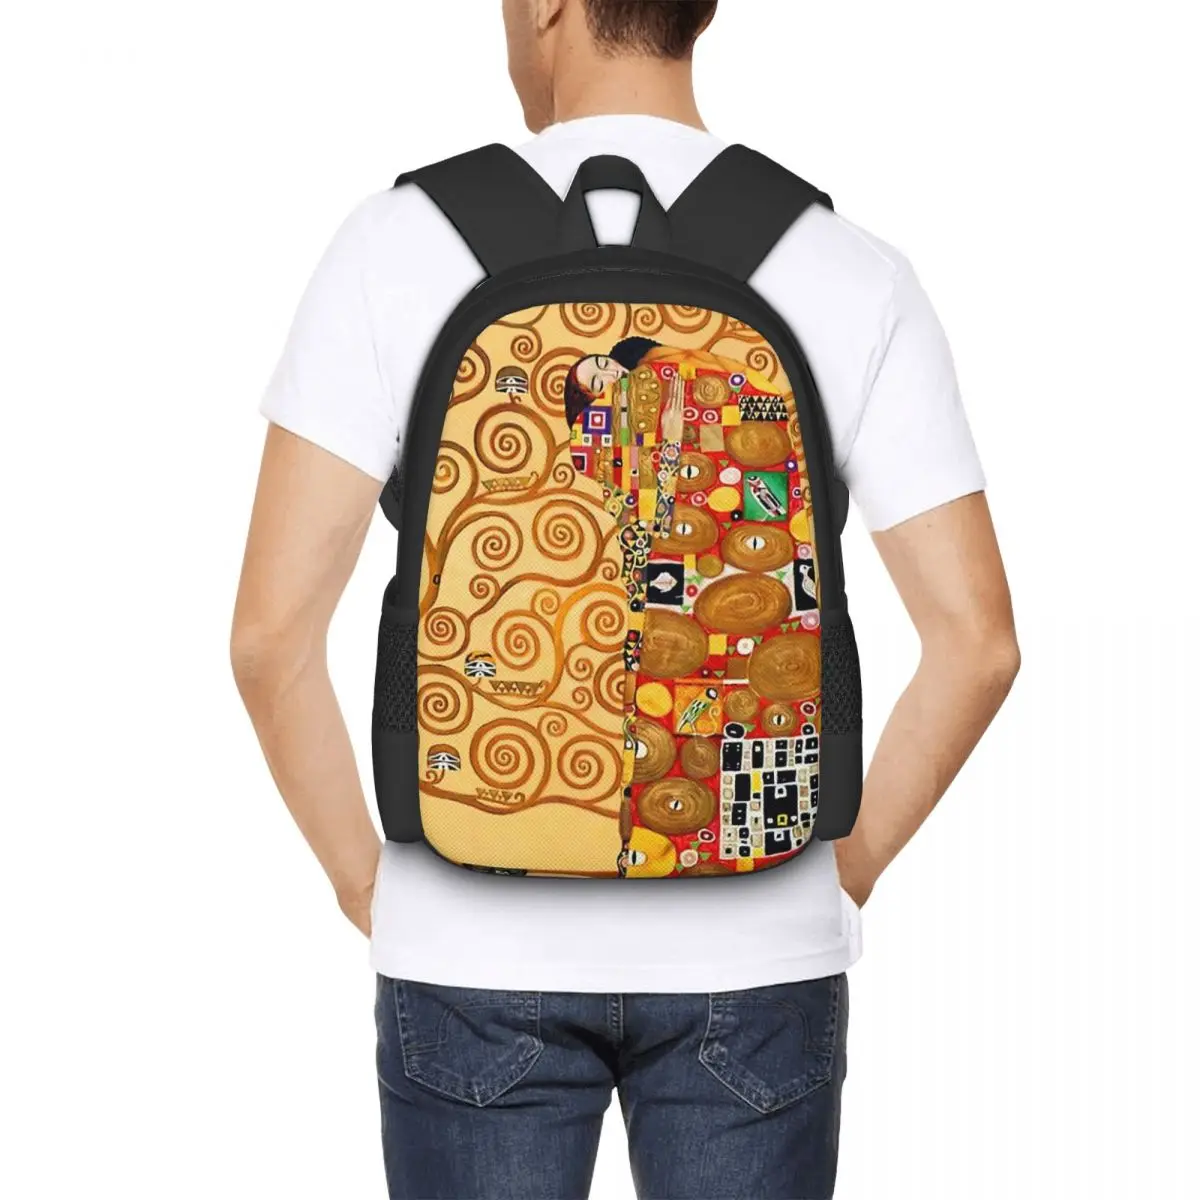 Gustav Klimt - The Tree Of Life Backpack for Girls Boys Travel RucksackBackpacks for Teenage school bag